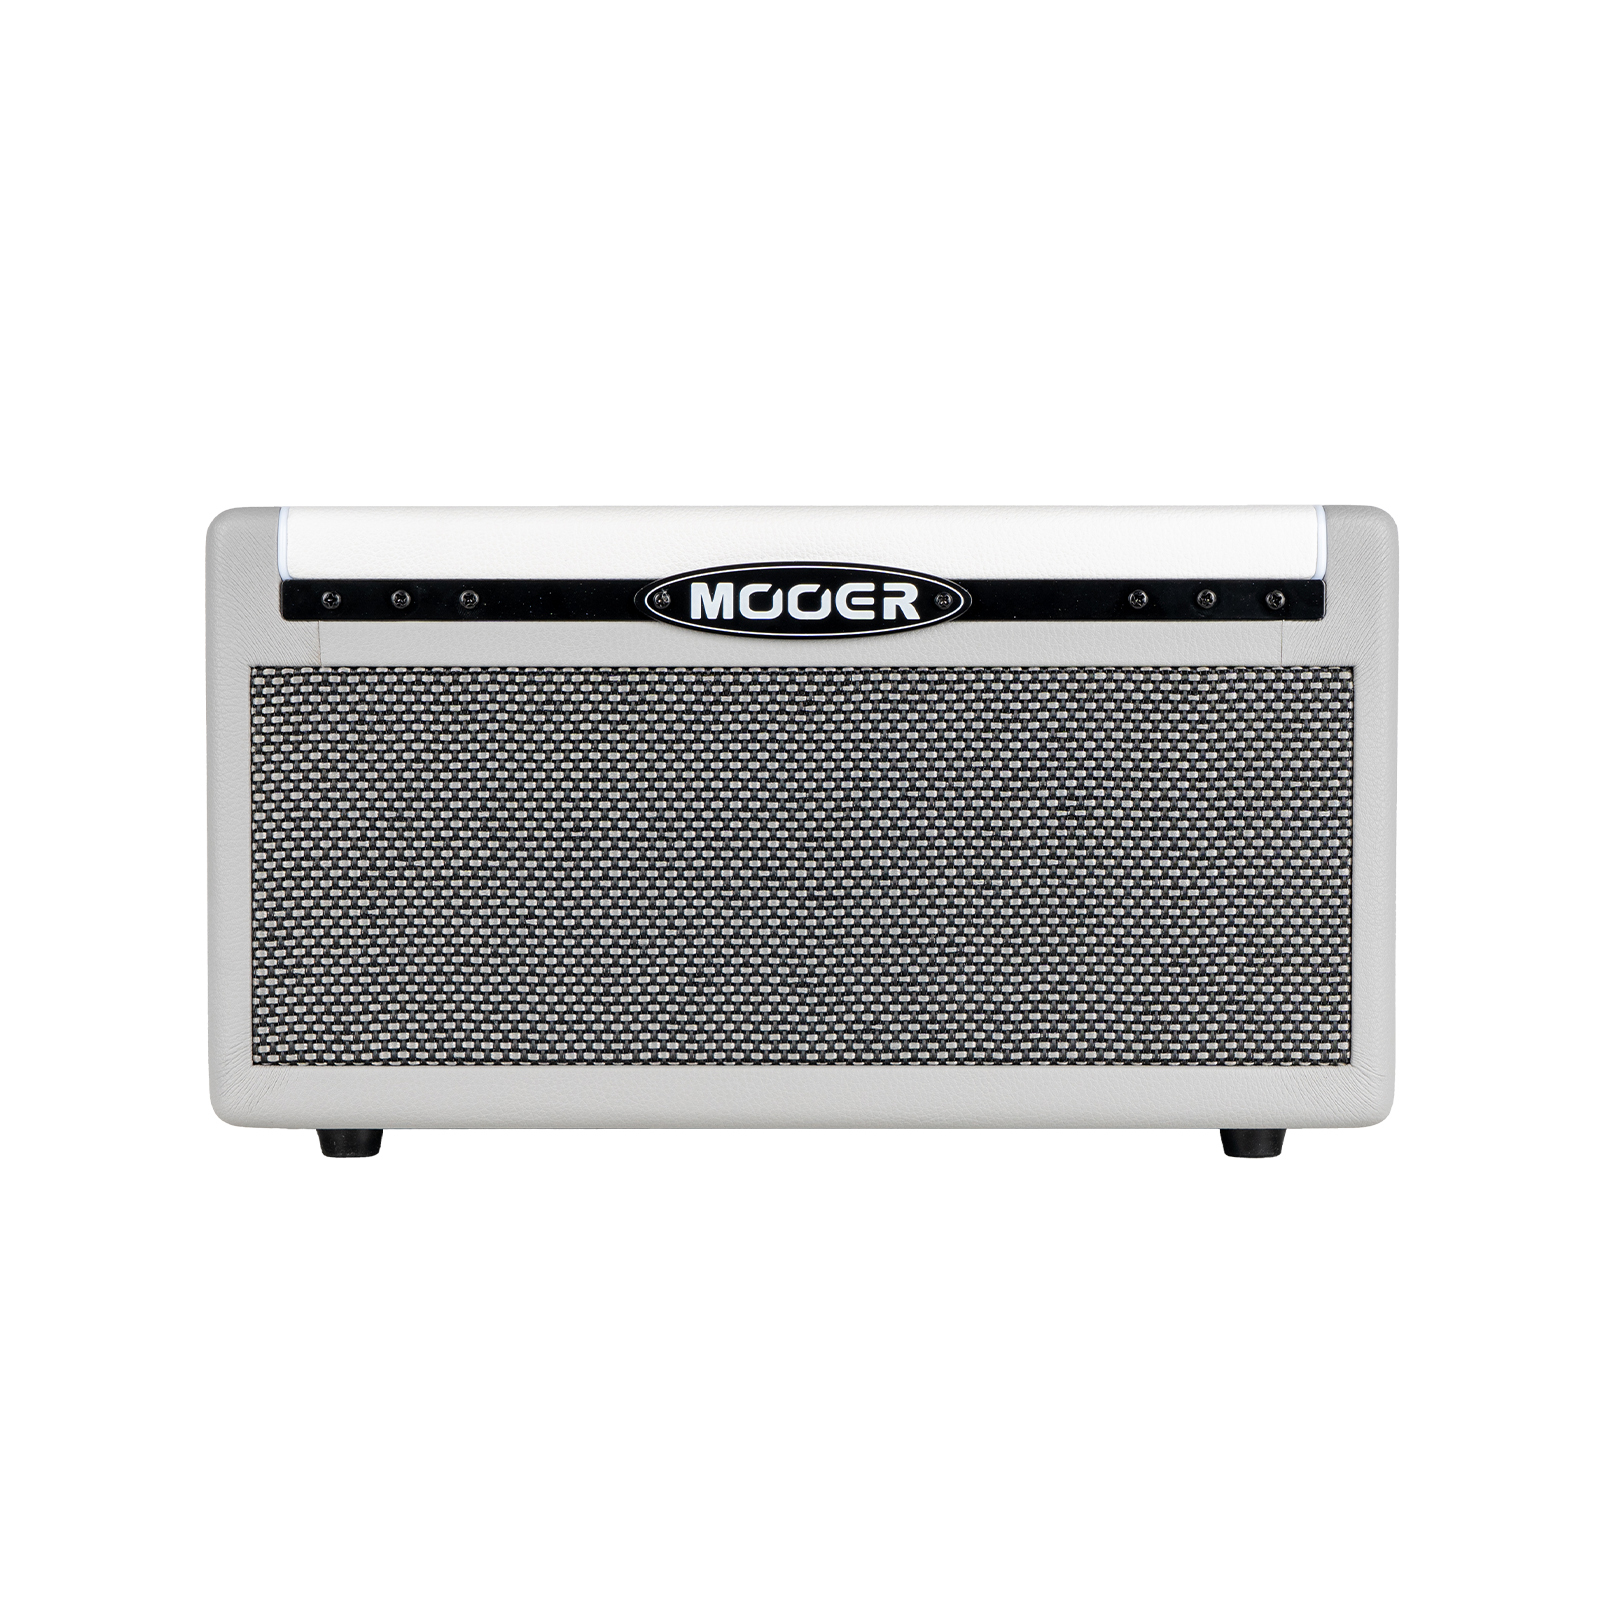 Mooer SD30i - Multi-Effects & Modeling Guitar Combo, 2x 4" / 30 Watt